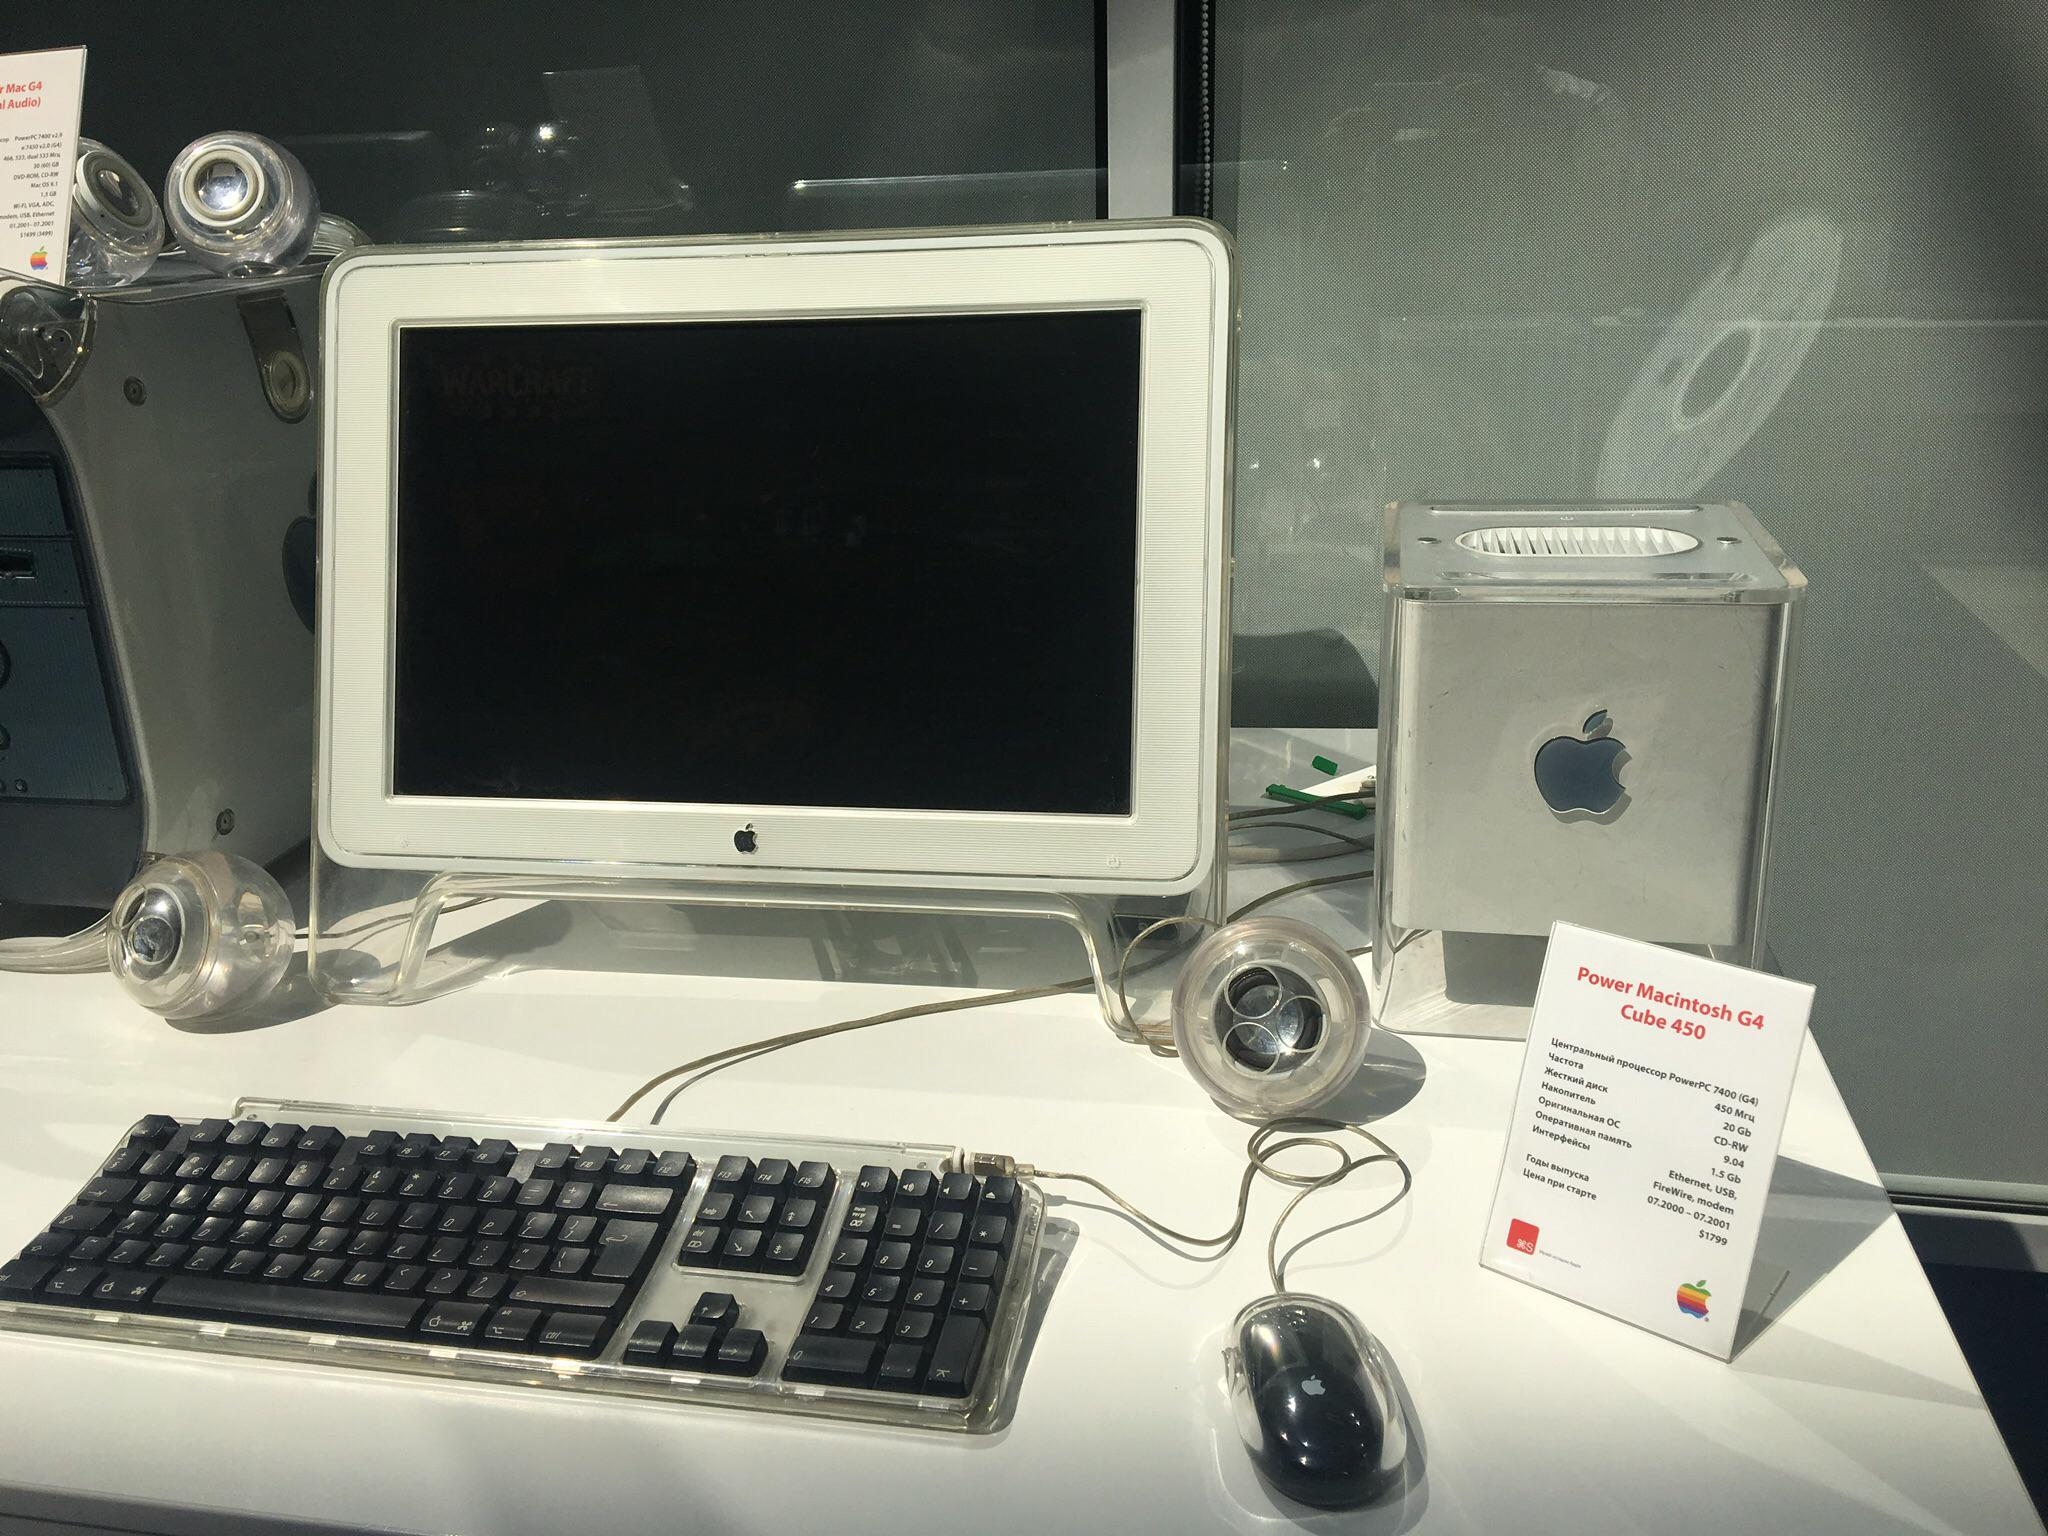 Sforum - Trang thông tin công nghệ mới nhất 0k7xq1at7n731 Bàn tay phù thủy đằng sau những sản phẩm của Apple - Jonathan Ive 